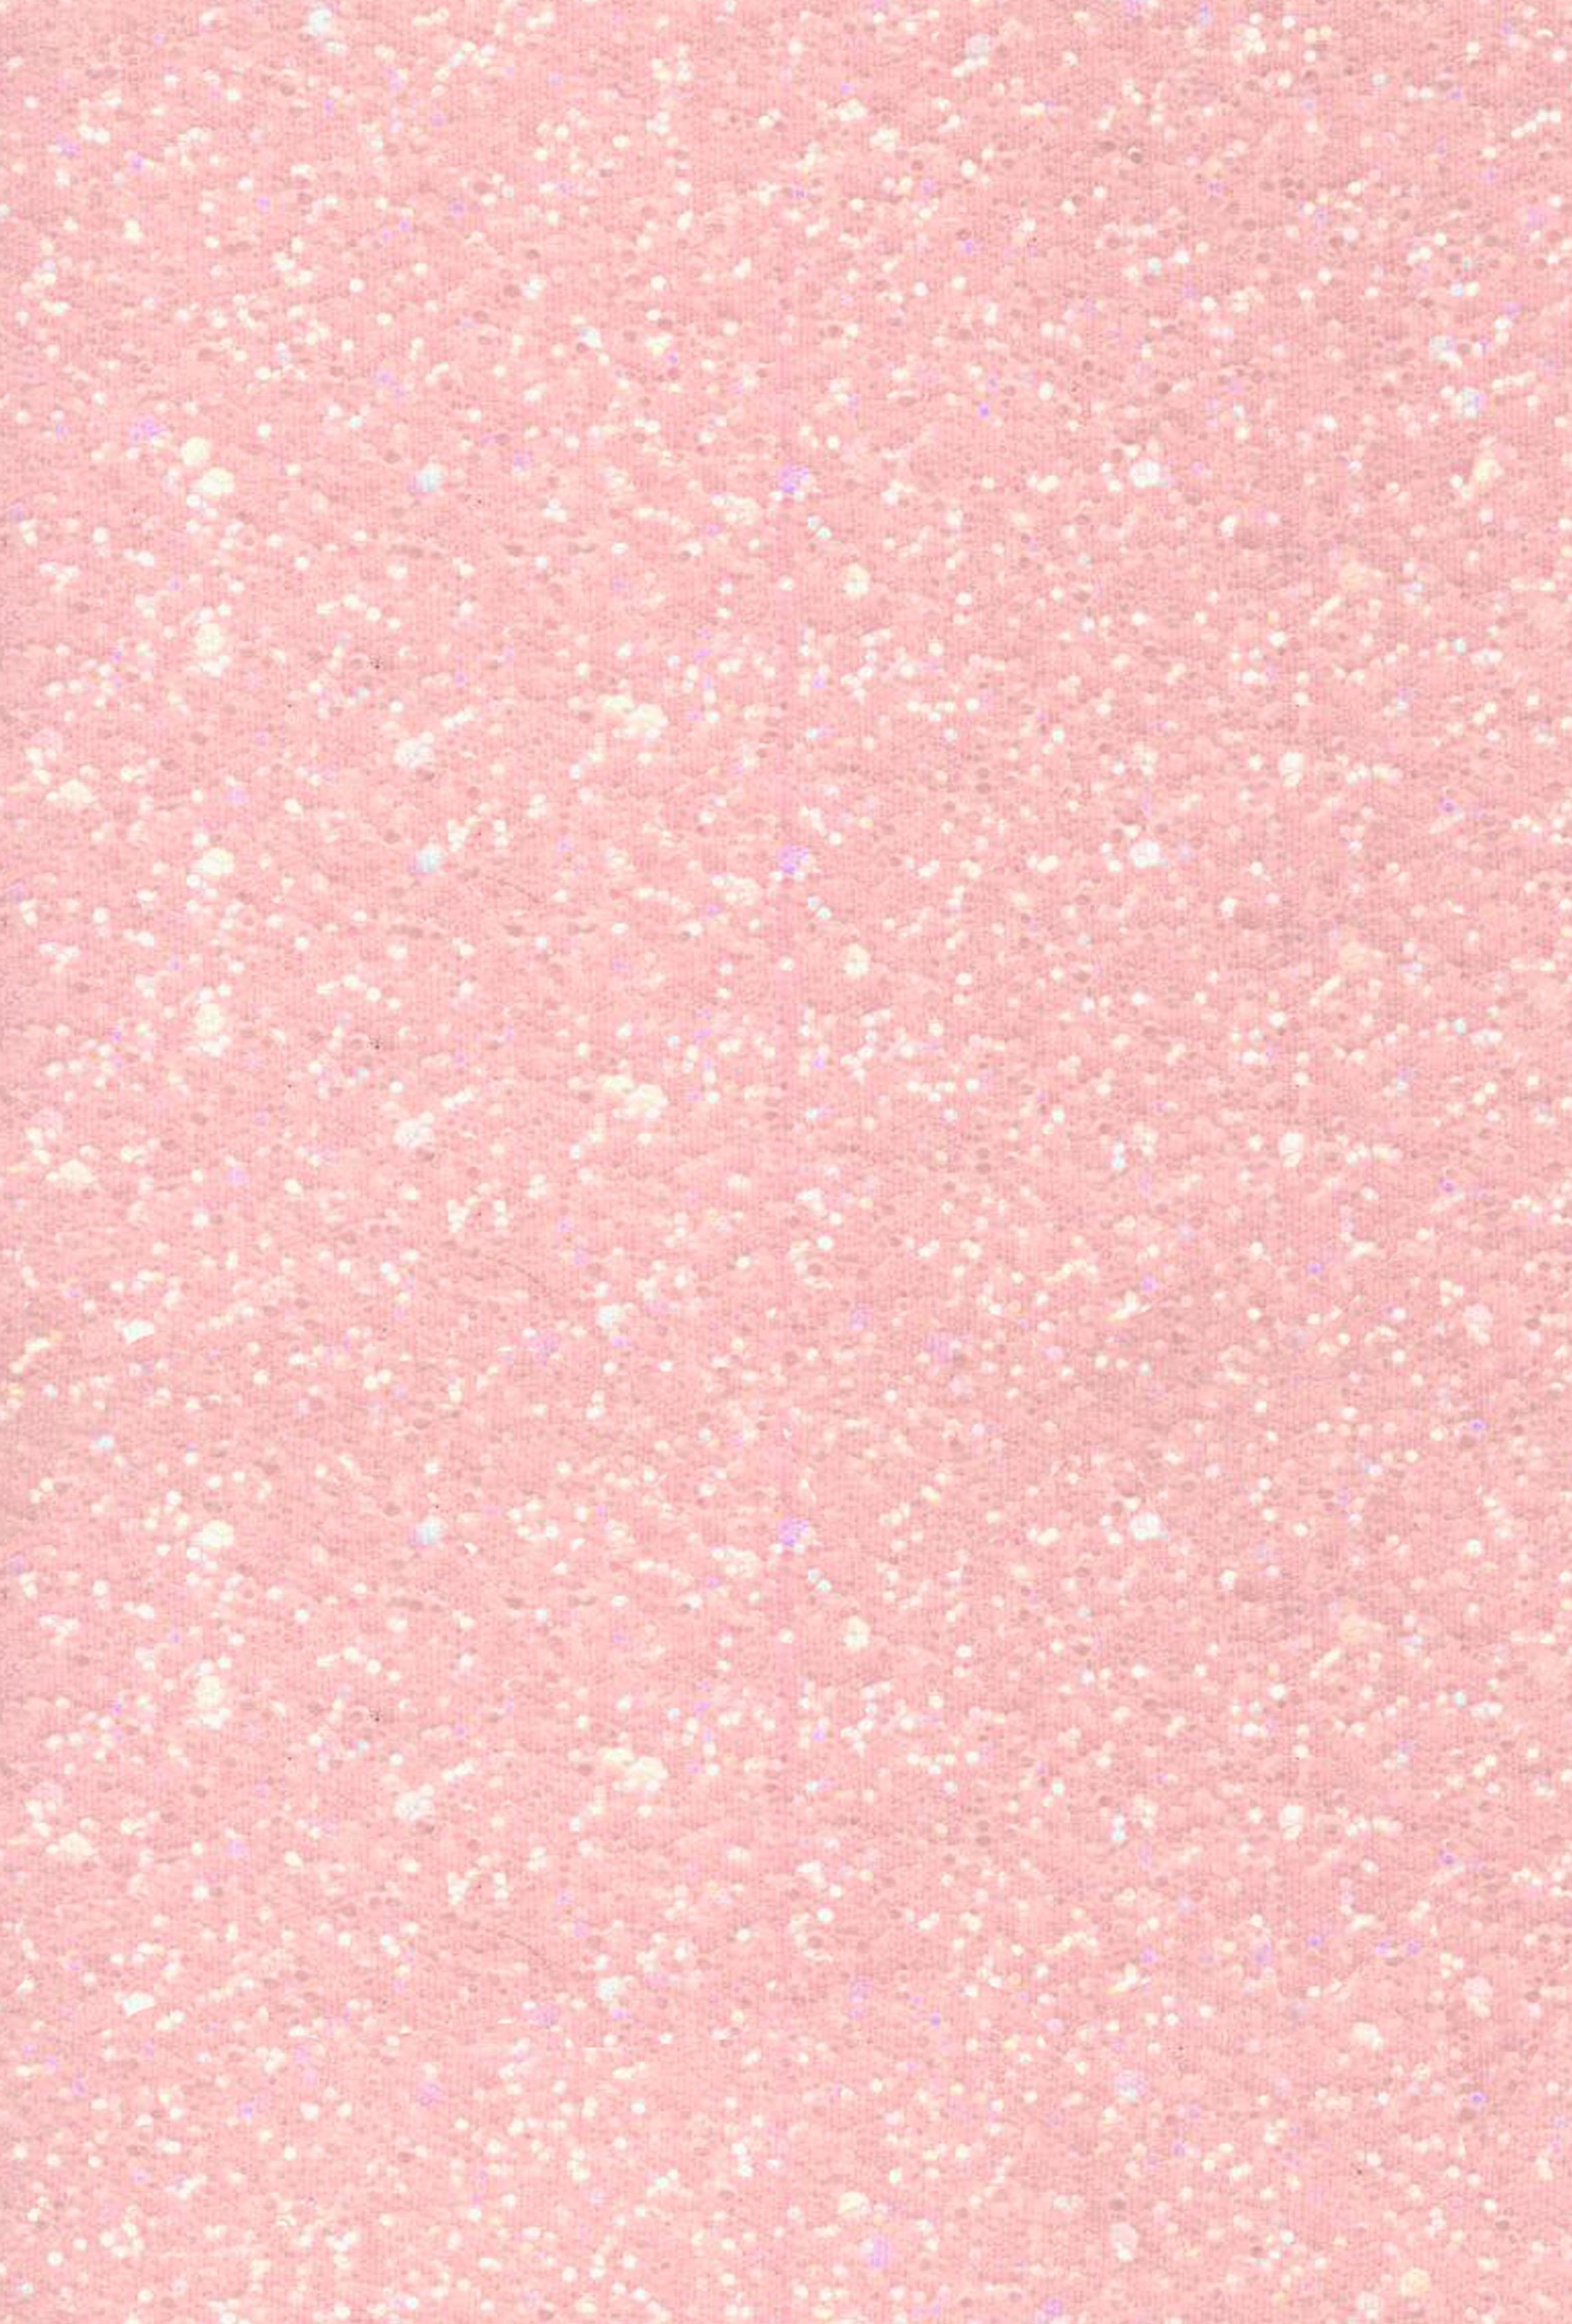 Más de 30 fondos de pantalla de Pale Pink Glitter - Descarga